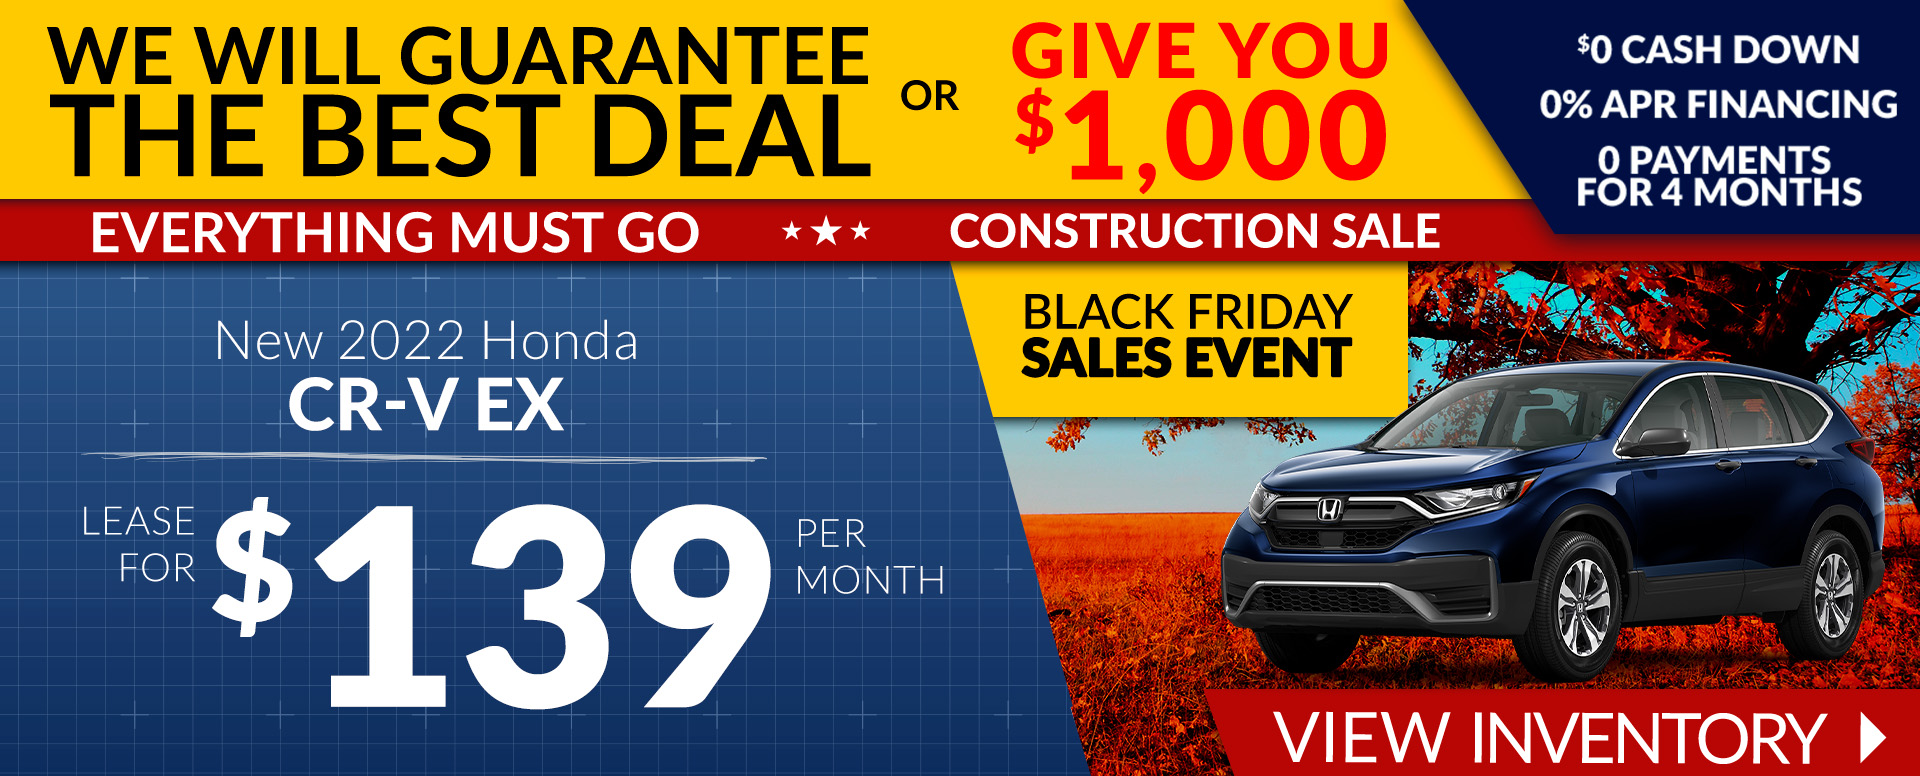 Honda CR-V Offer